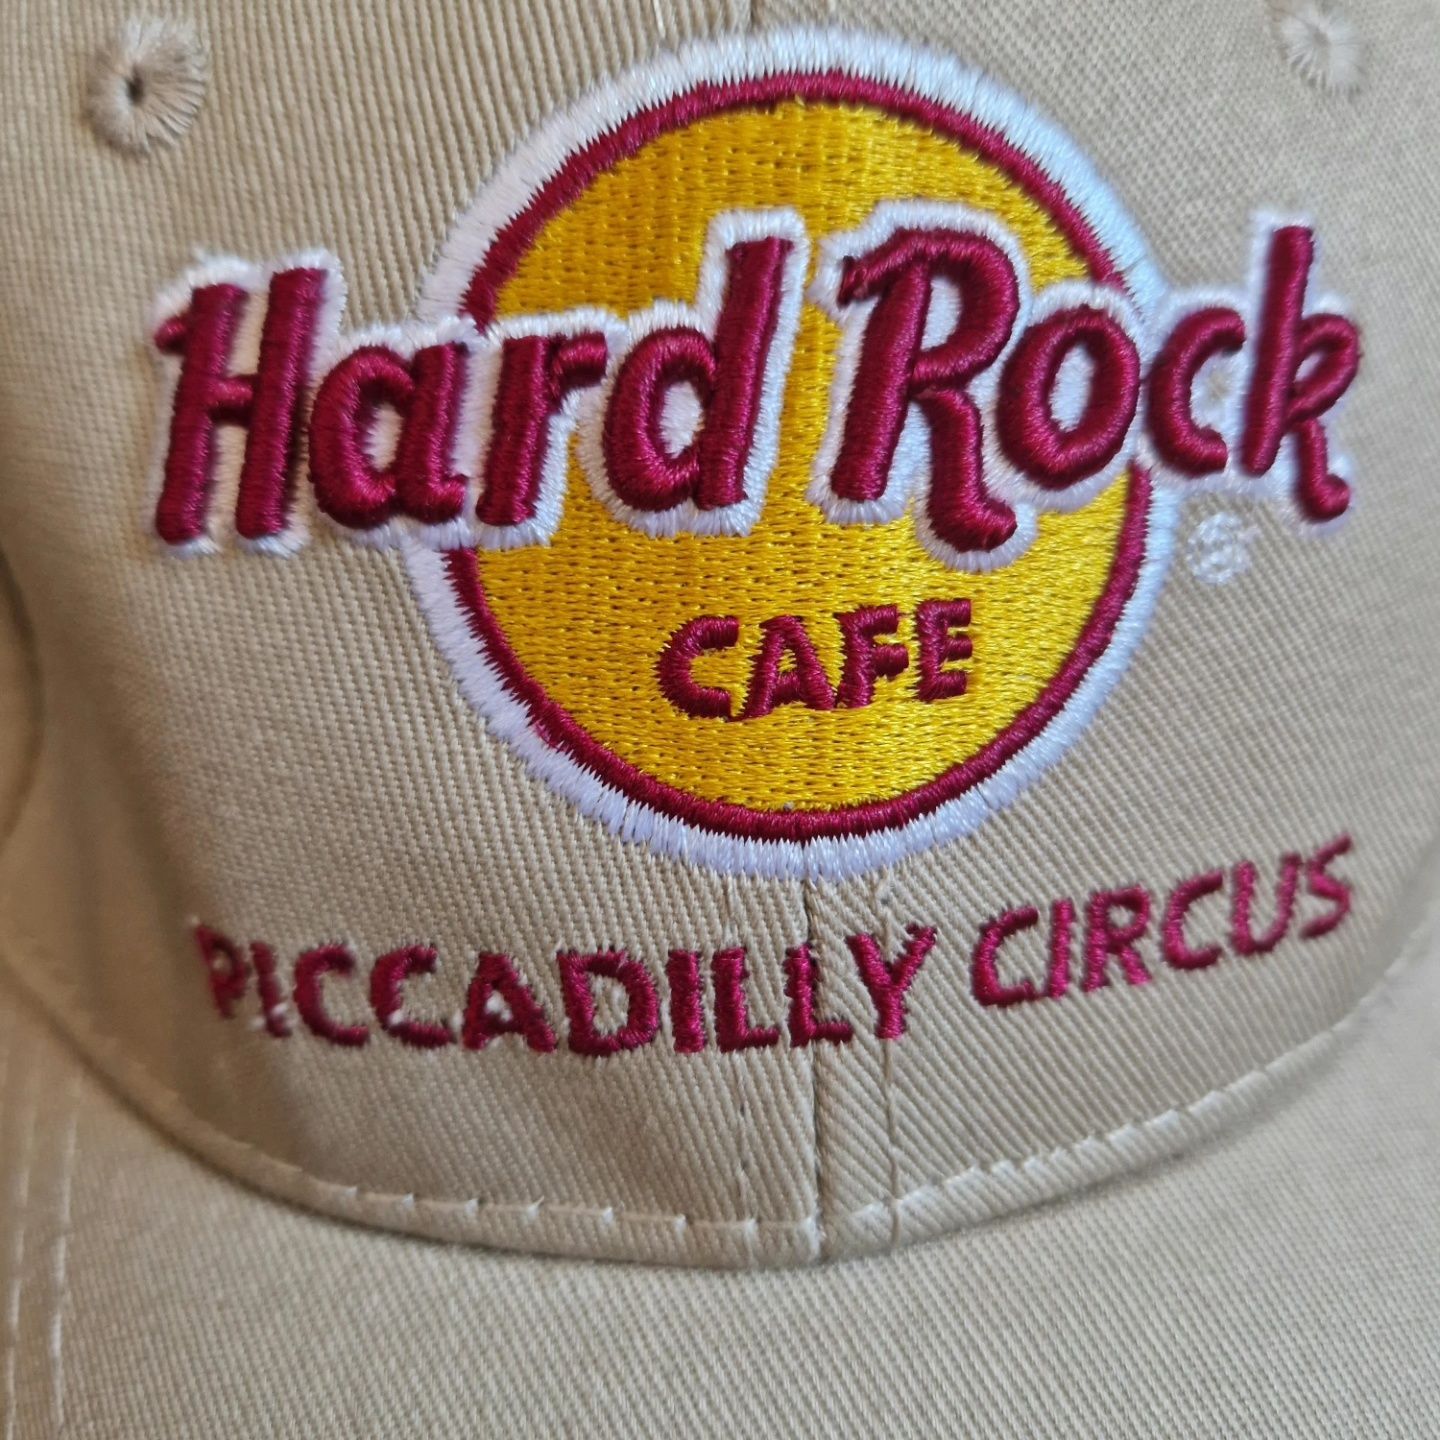 hard rock cafe osfa